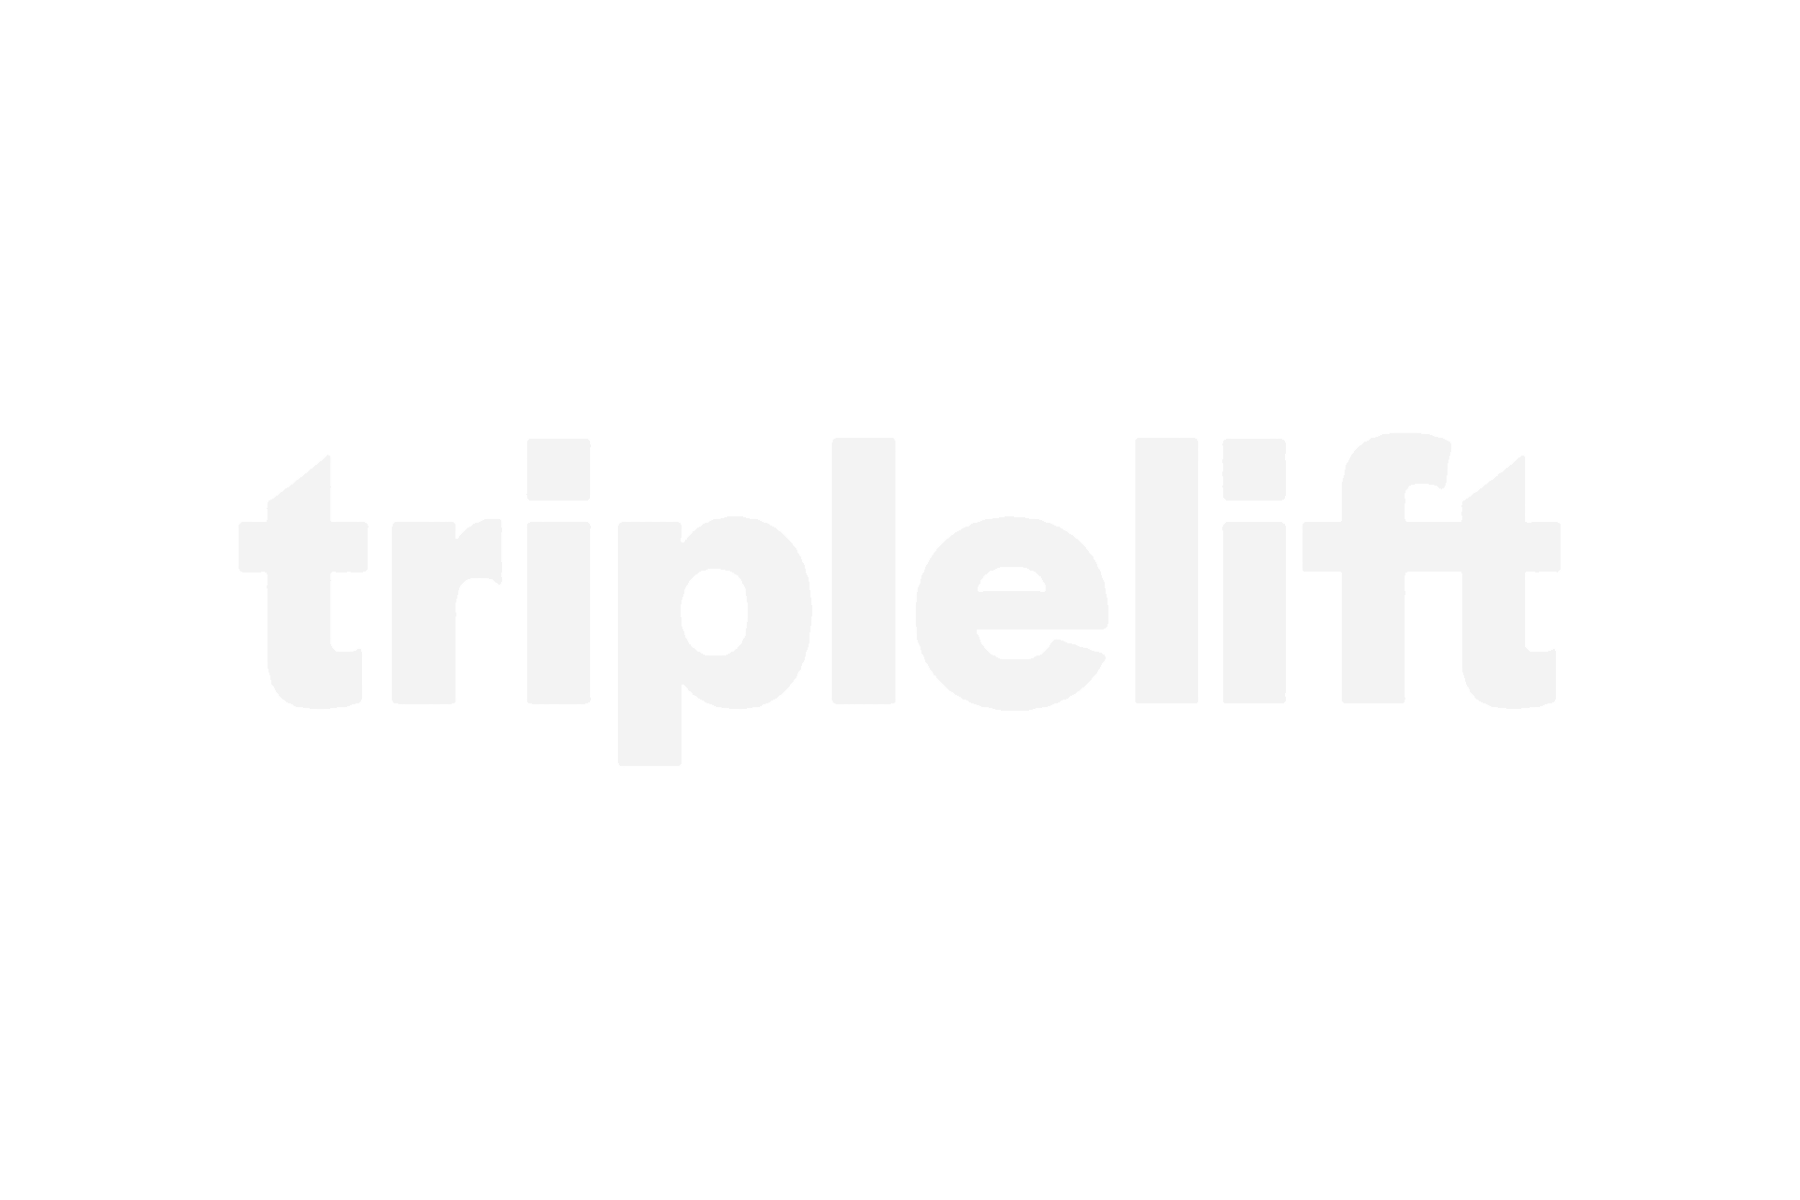 Triplelift (Copy)